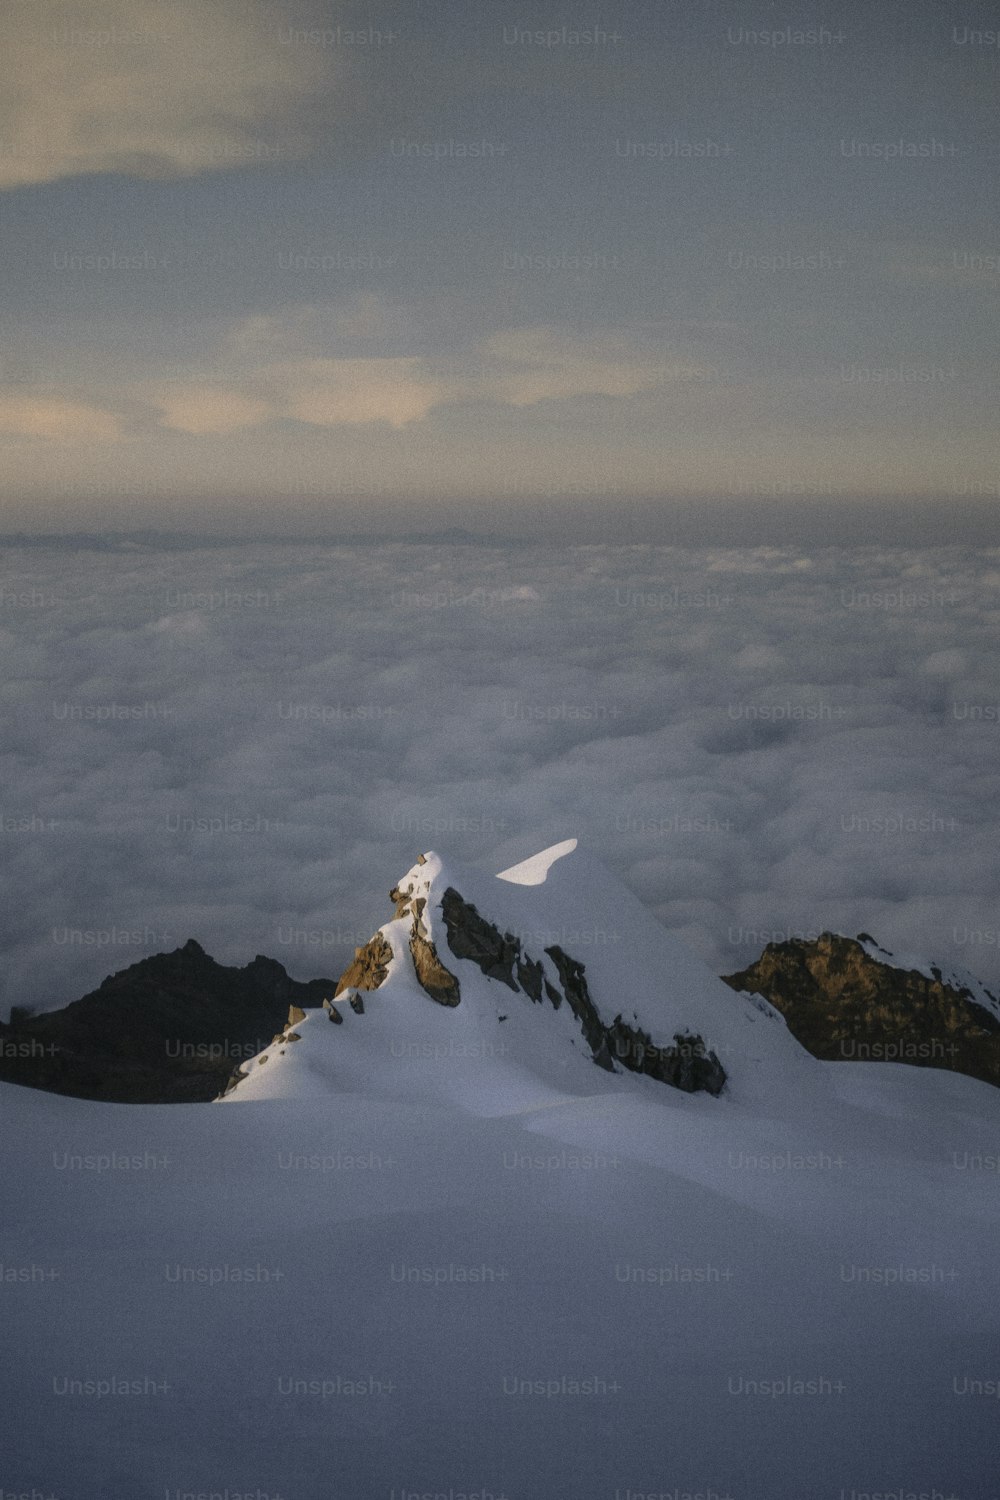 uma montanha coberta de neve e nuvens sob um céu nublado